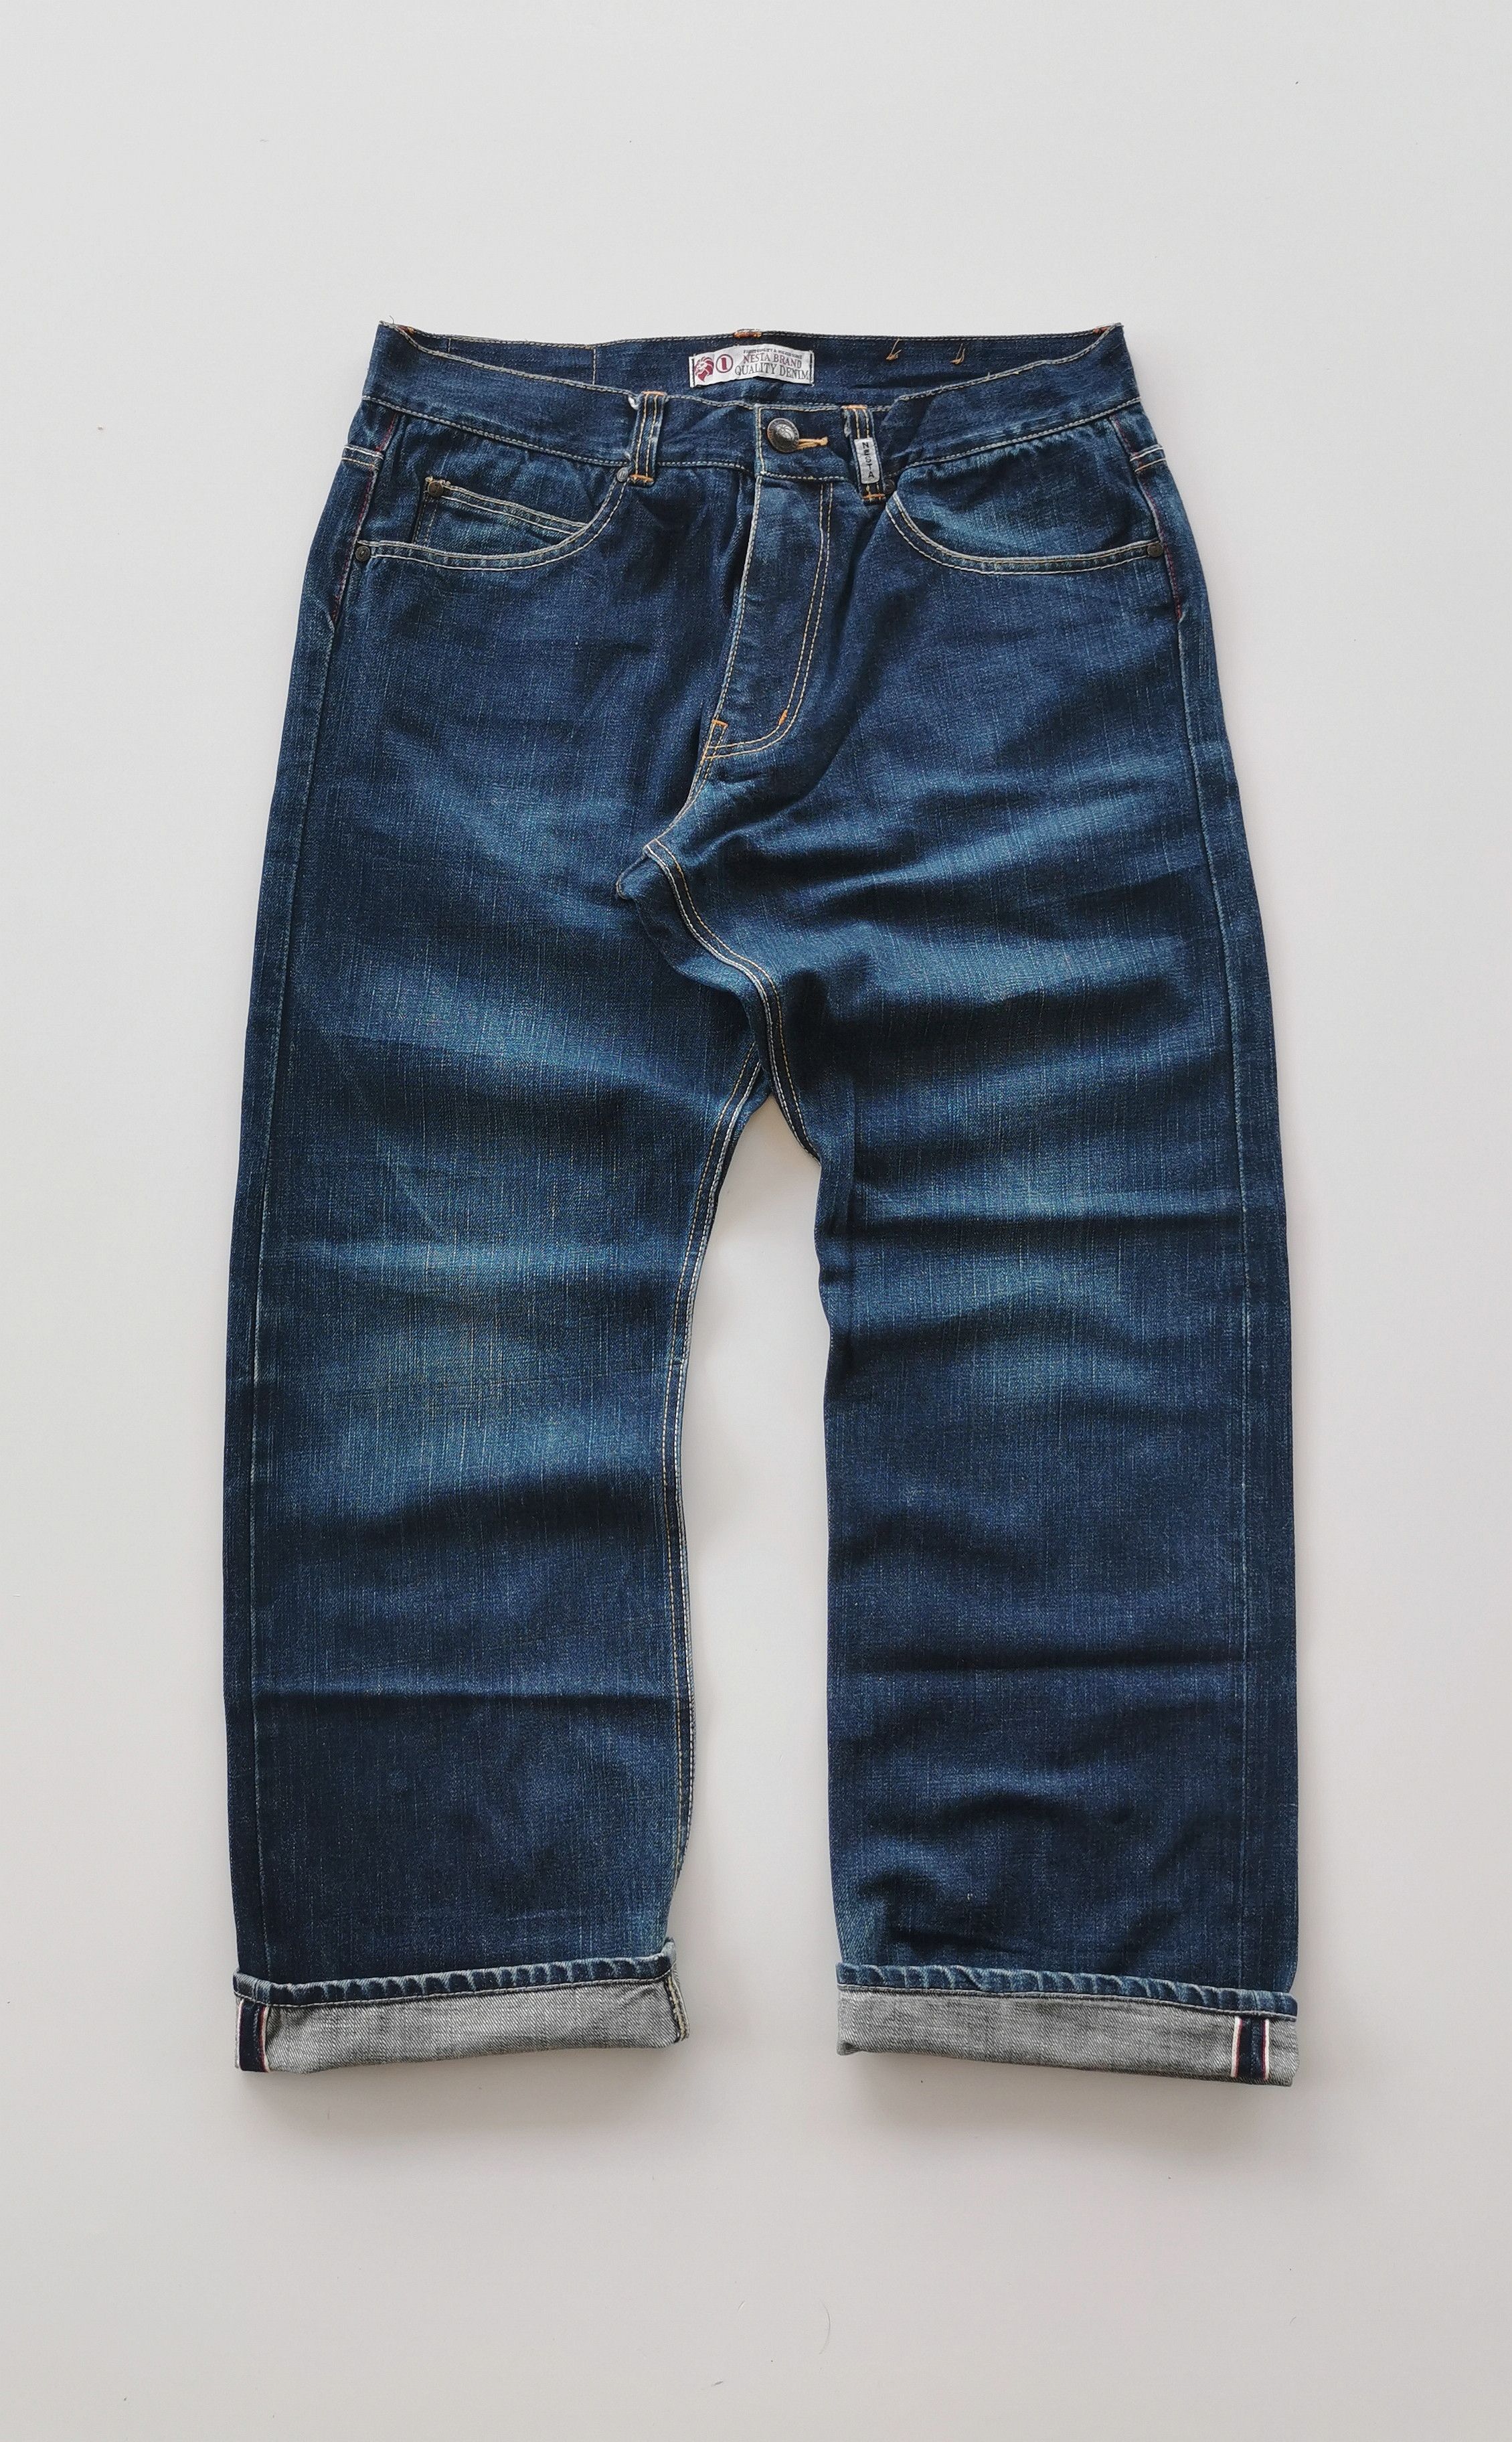 Japanese Brand Nesta Japan Selvedge Jeans | Grailed